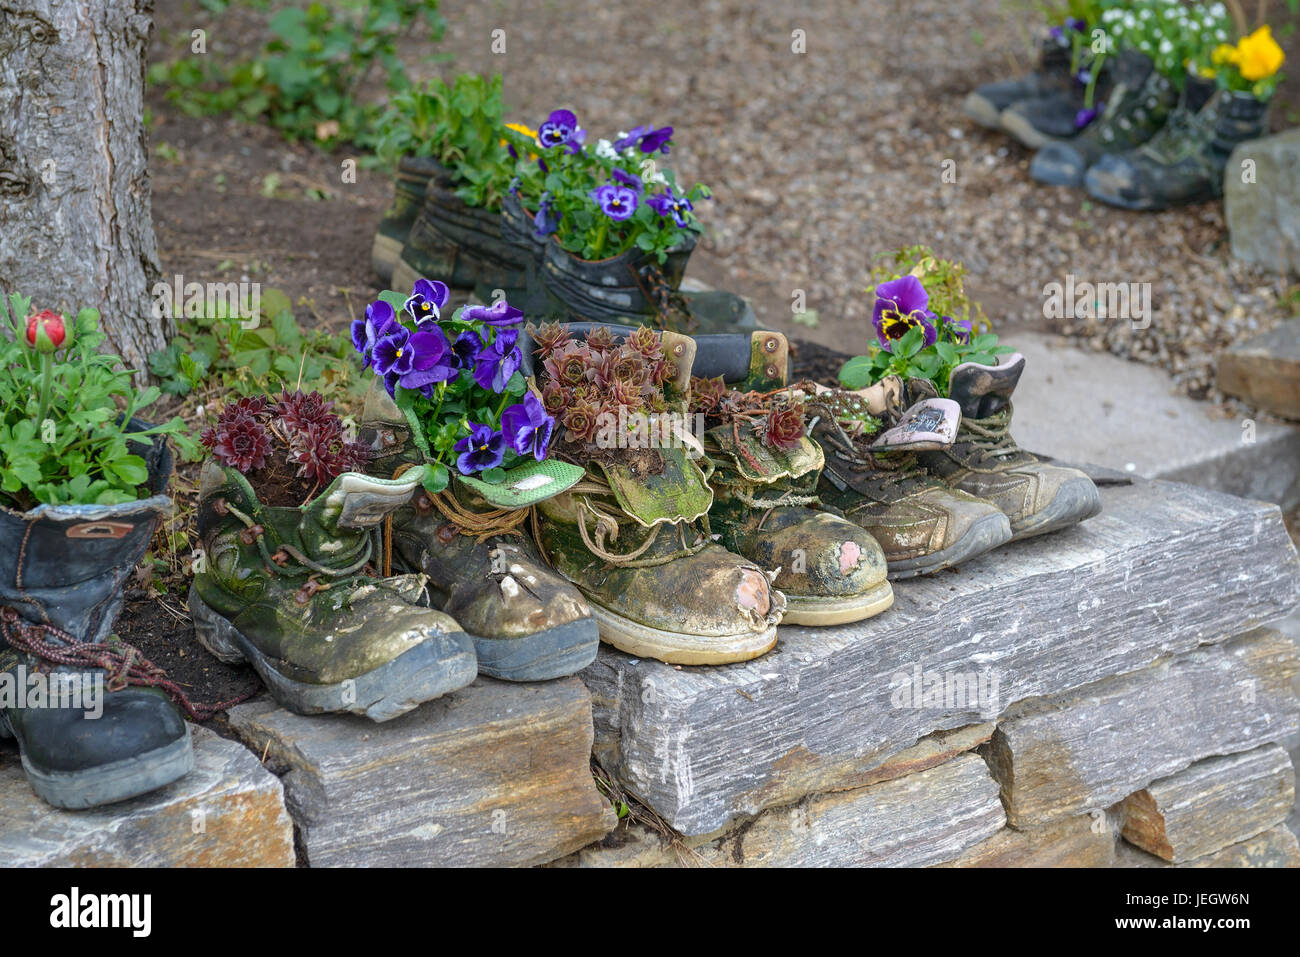 Piantate le scarpe, Hauswurz, Sempervivum , Bepflanzte Schuhe, Hauswurz (Sempervivum) Foto Stock